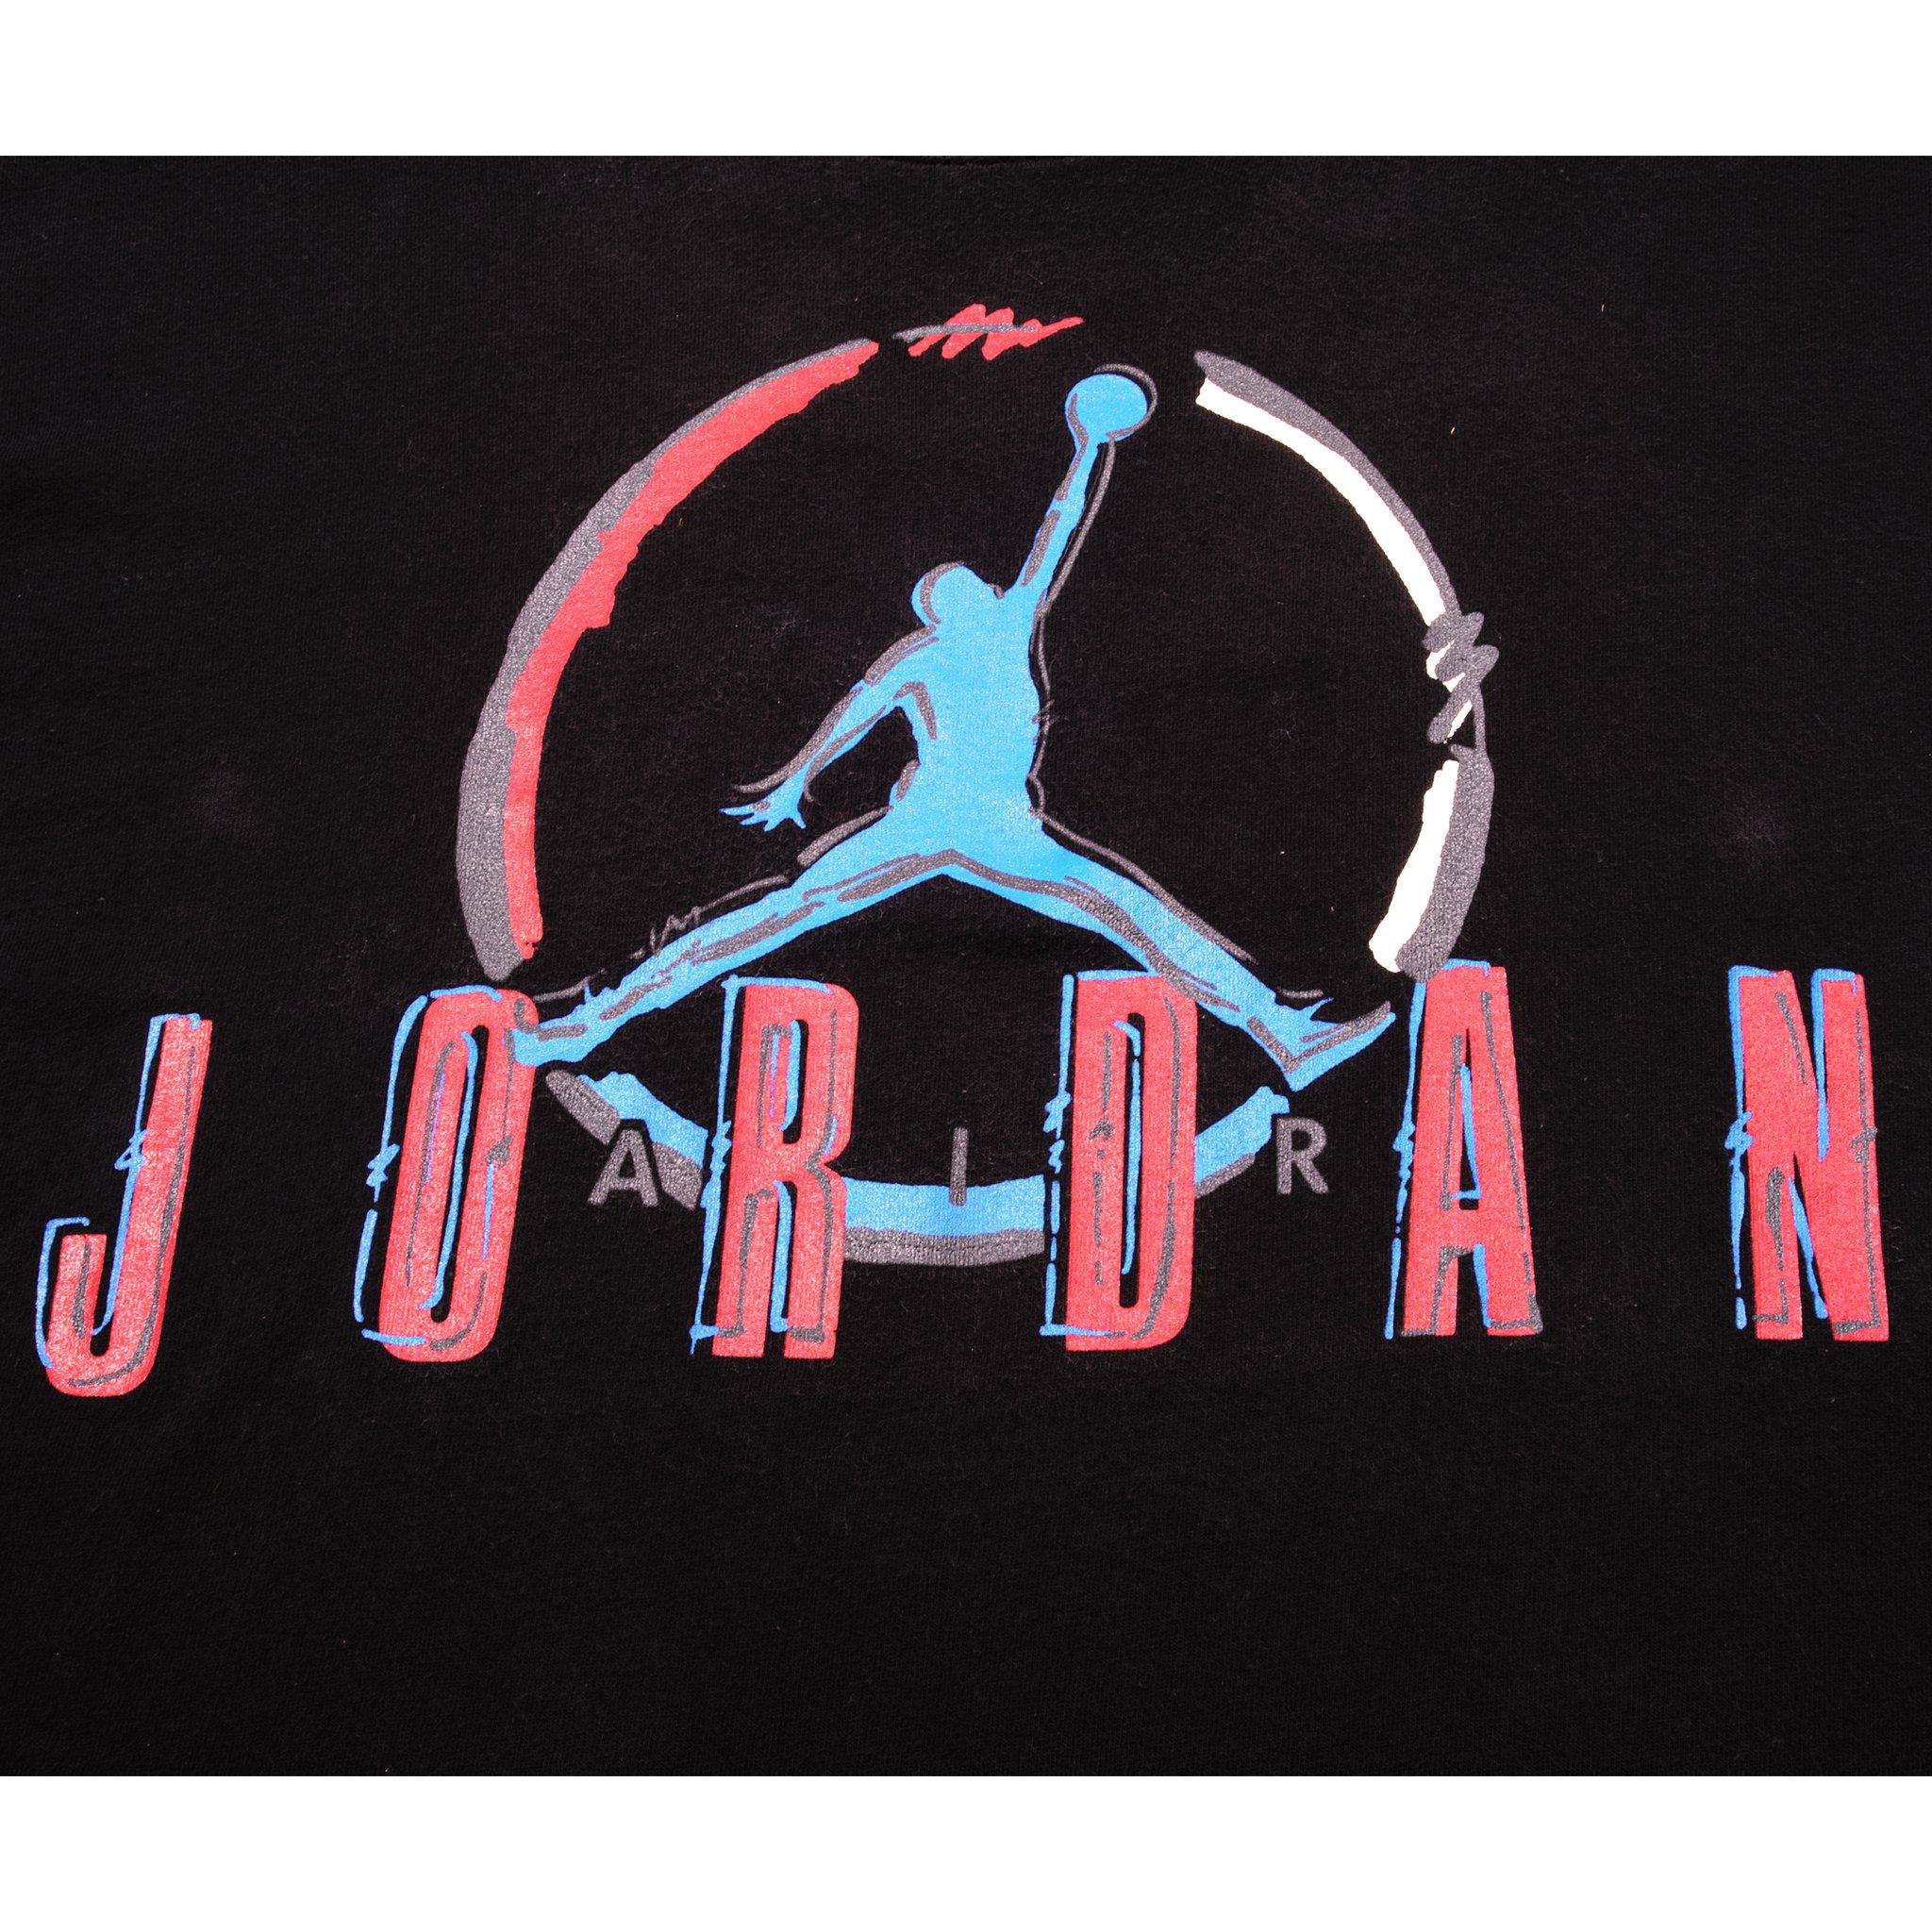 Vintage Nike Air Jordan Tee Shirt 1987-1992 Size XL Made in USA